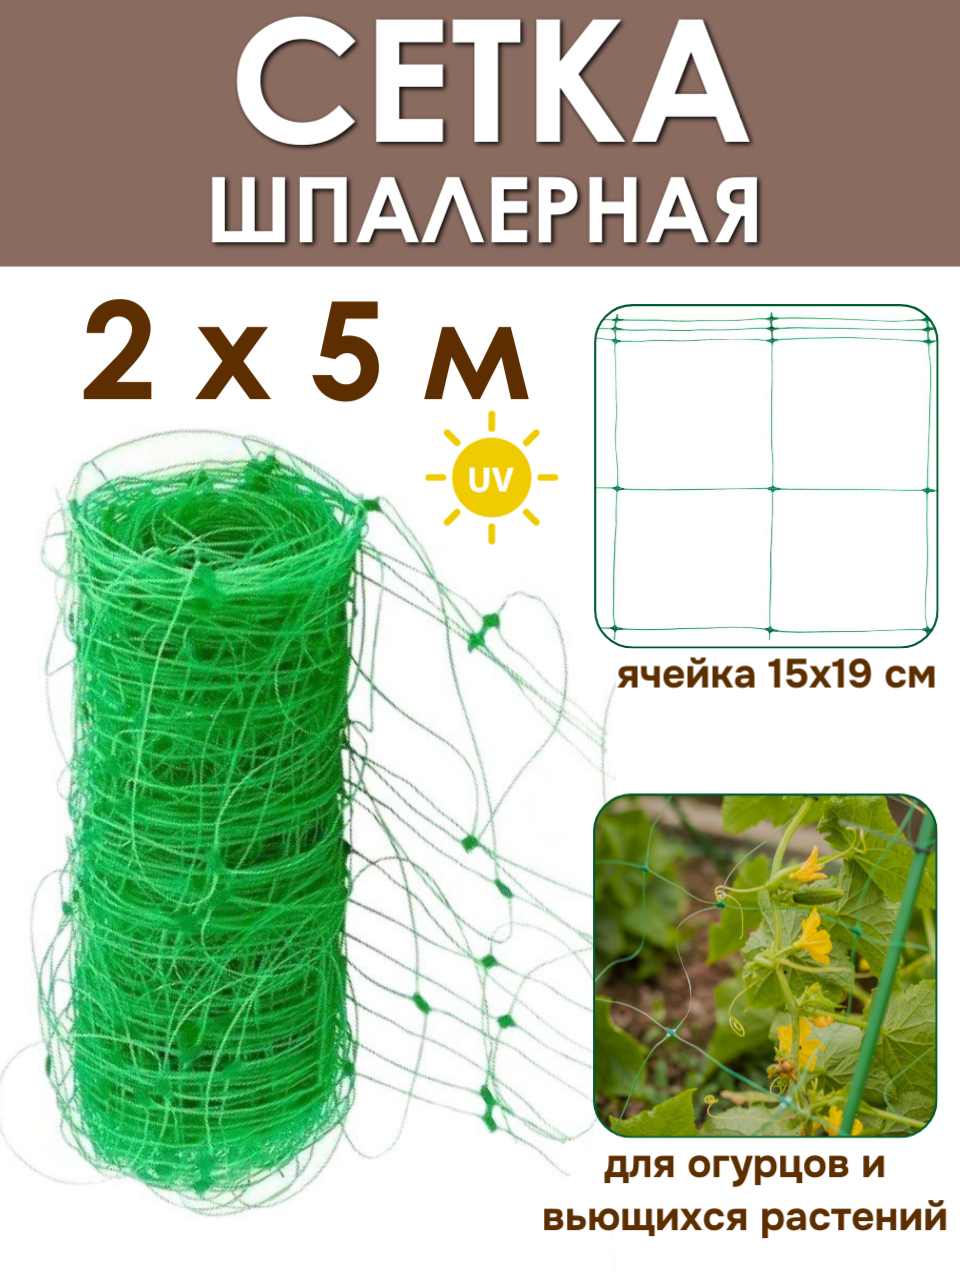 Сетка шпалерная садовая 2х5 м (10 м2) для вьющихся растений Ф-170 от ProTent цвет хаки